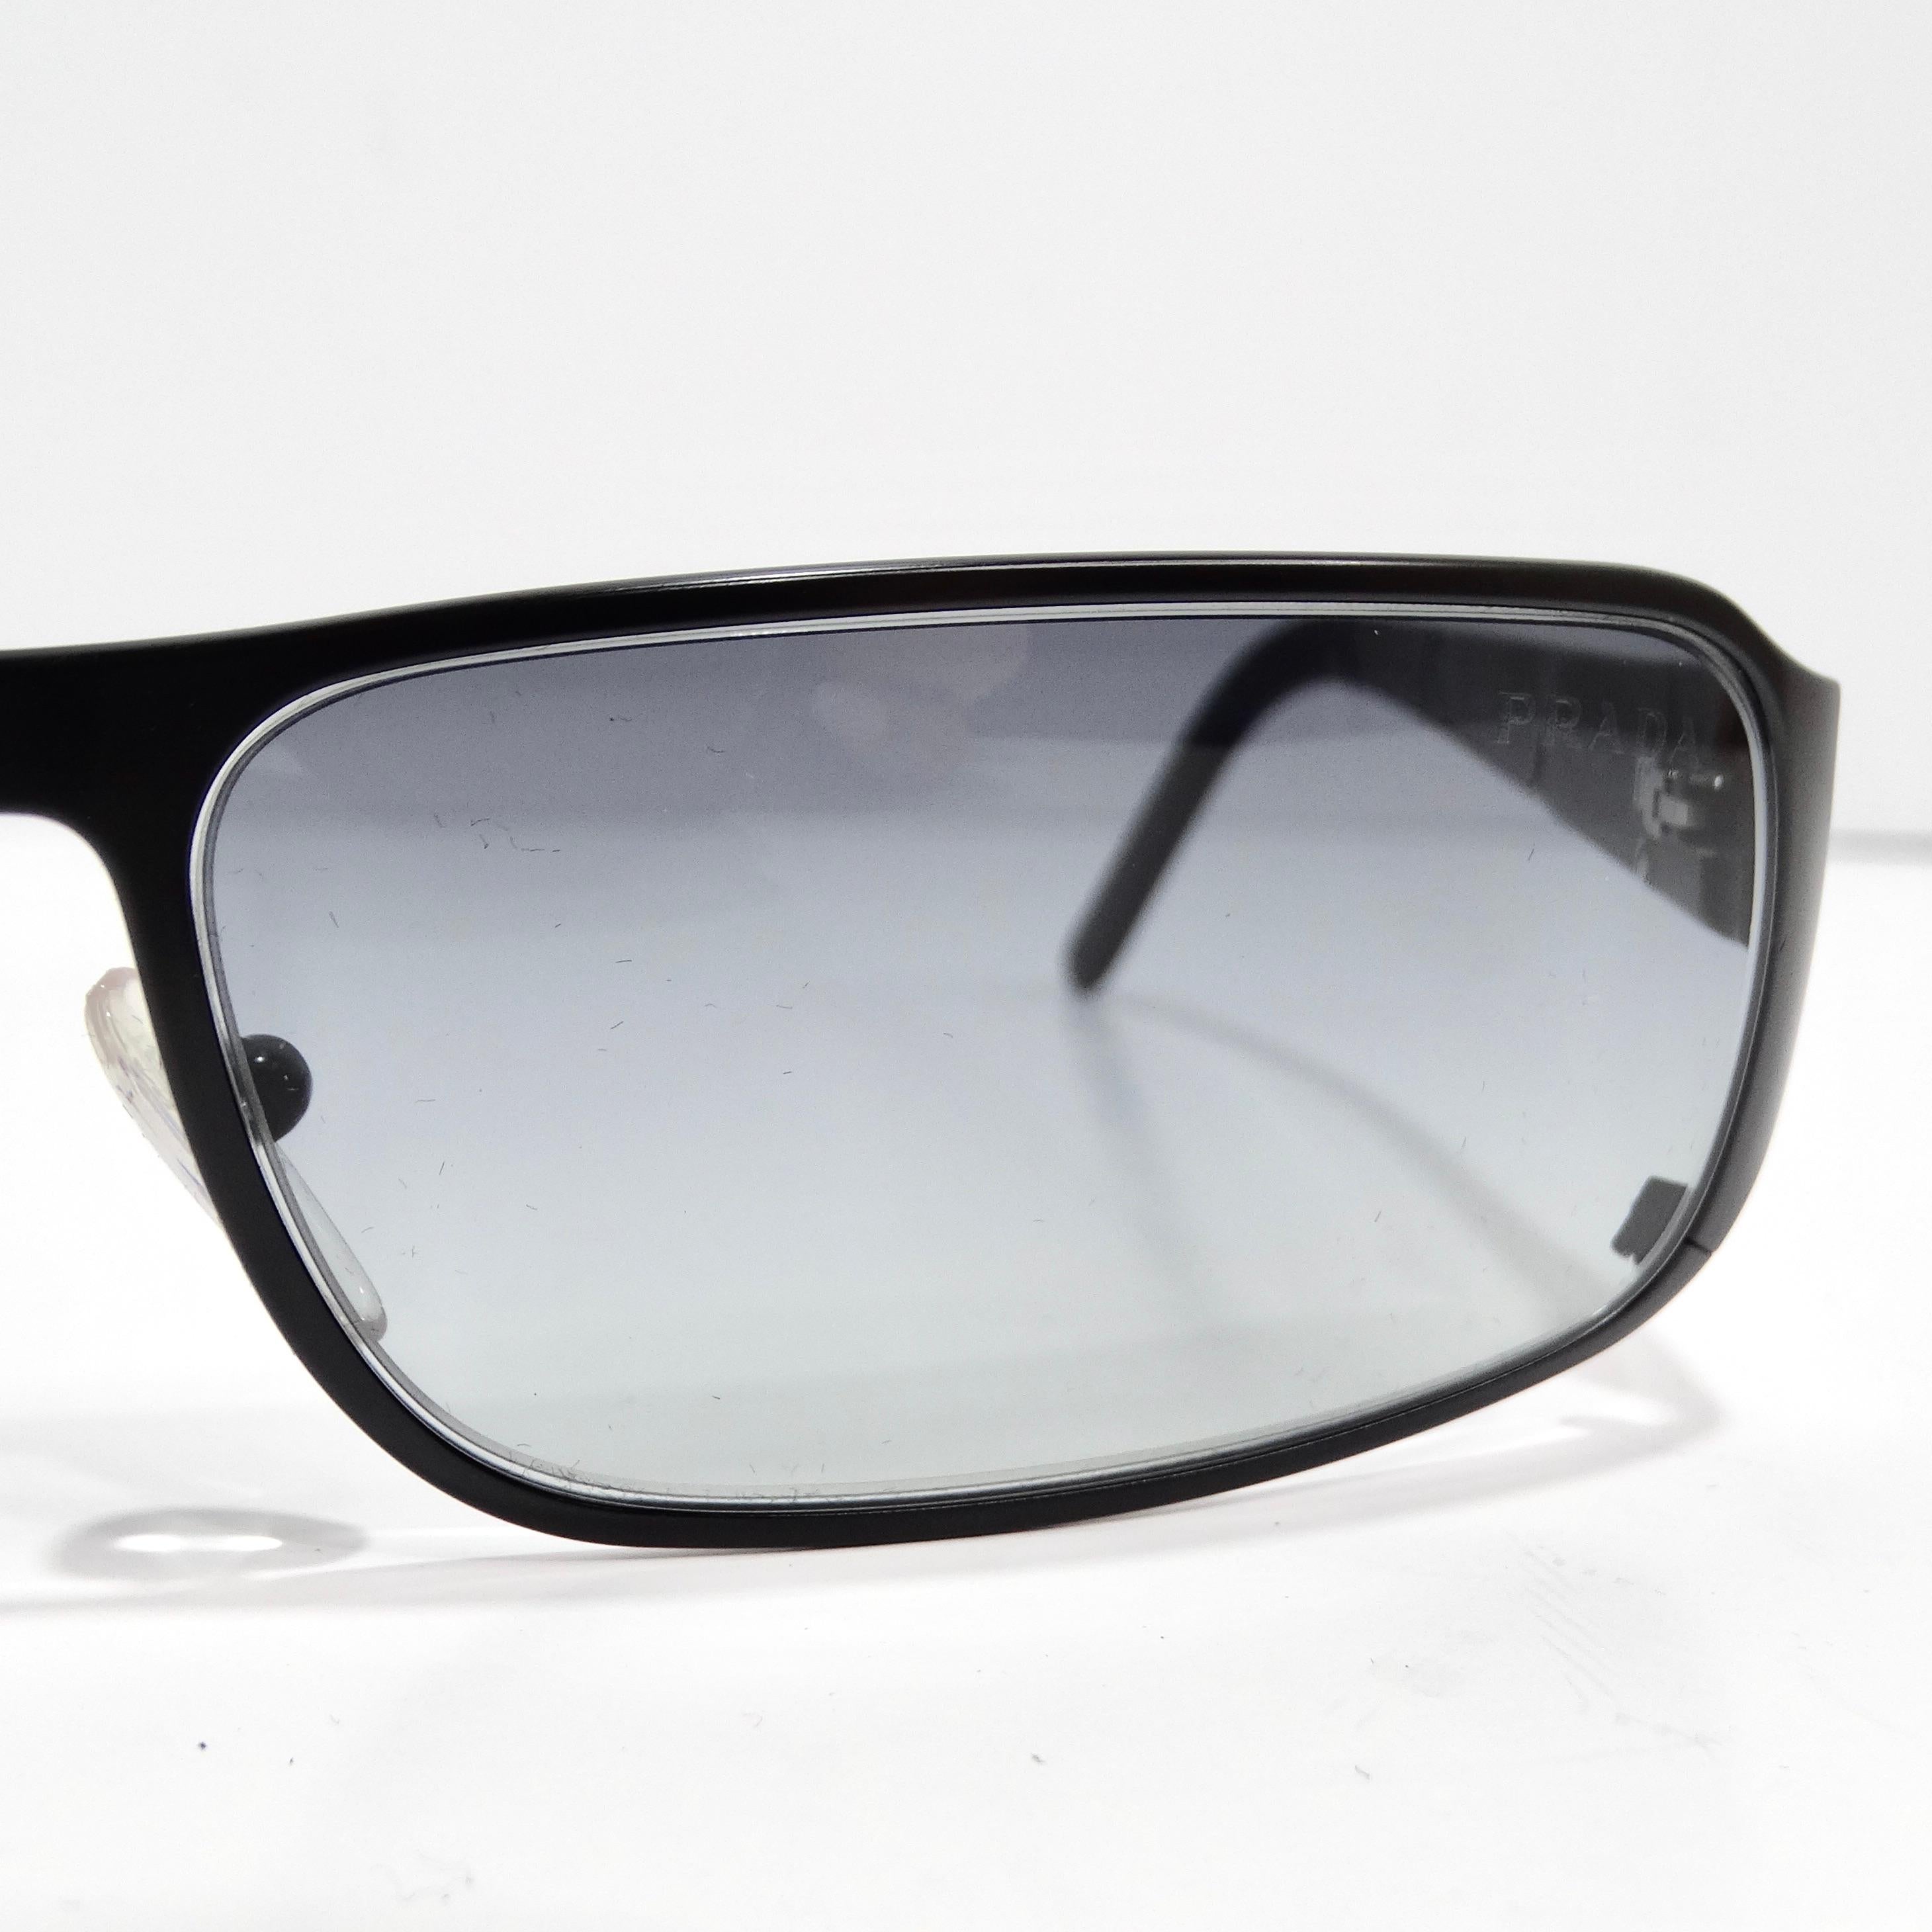 Entrez dans l'élégance intemporelle des lunettes de soleil Prada 1990 à monture rectangulaire noire, un accessoire classique qui allie sans effort sophistication et style durable. Ces lunettes de soleil sont dotées de fins bords noirs, de branches